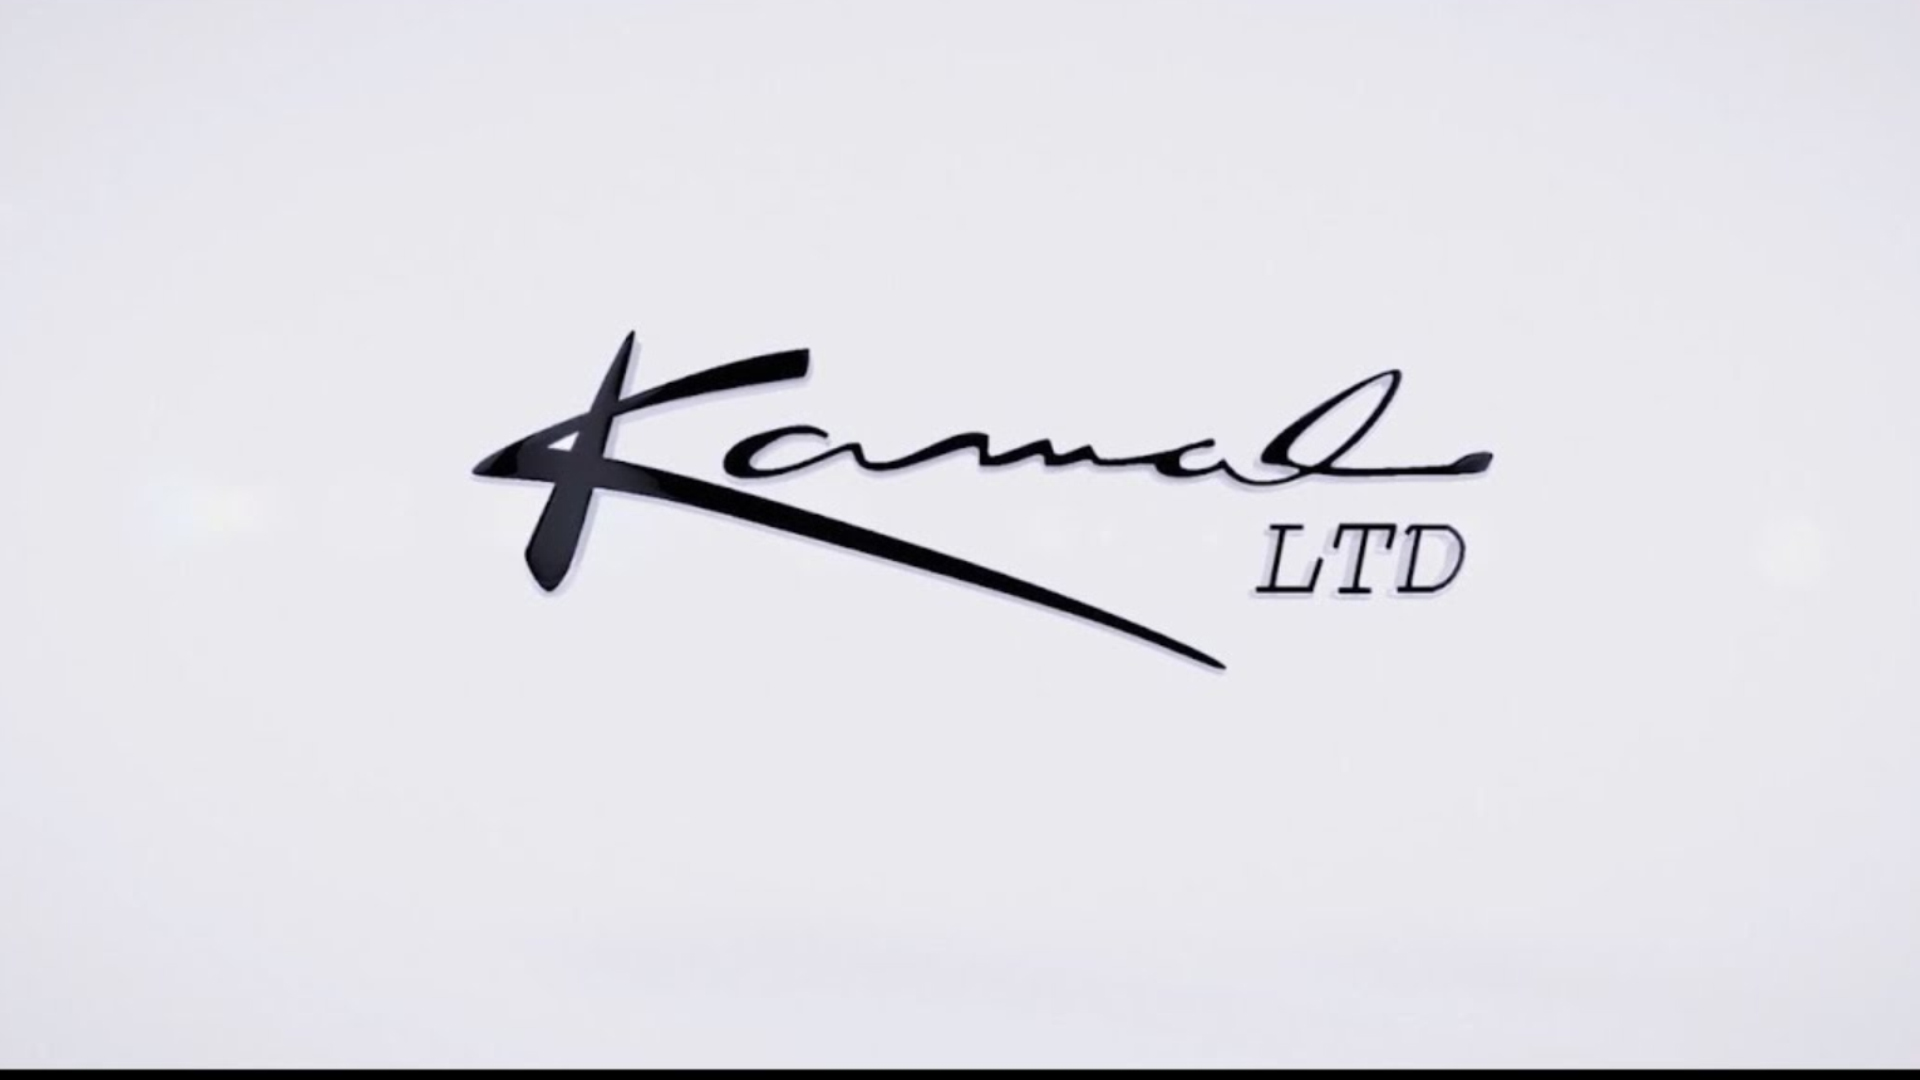 Kamal Limited